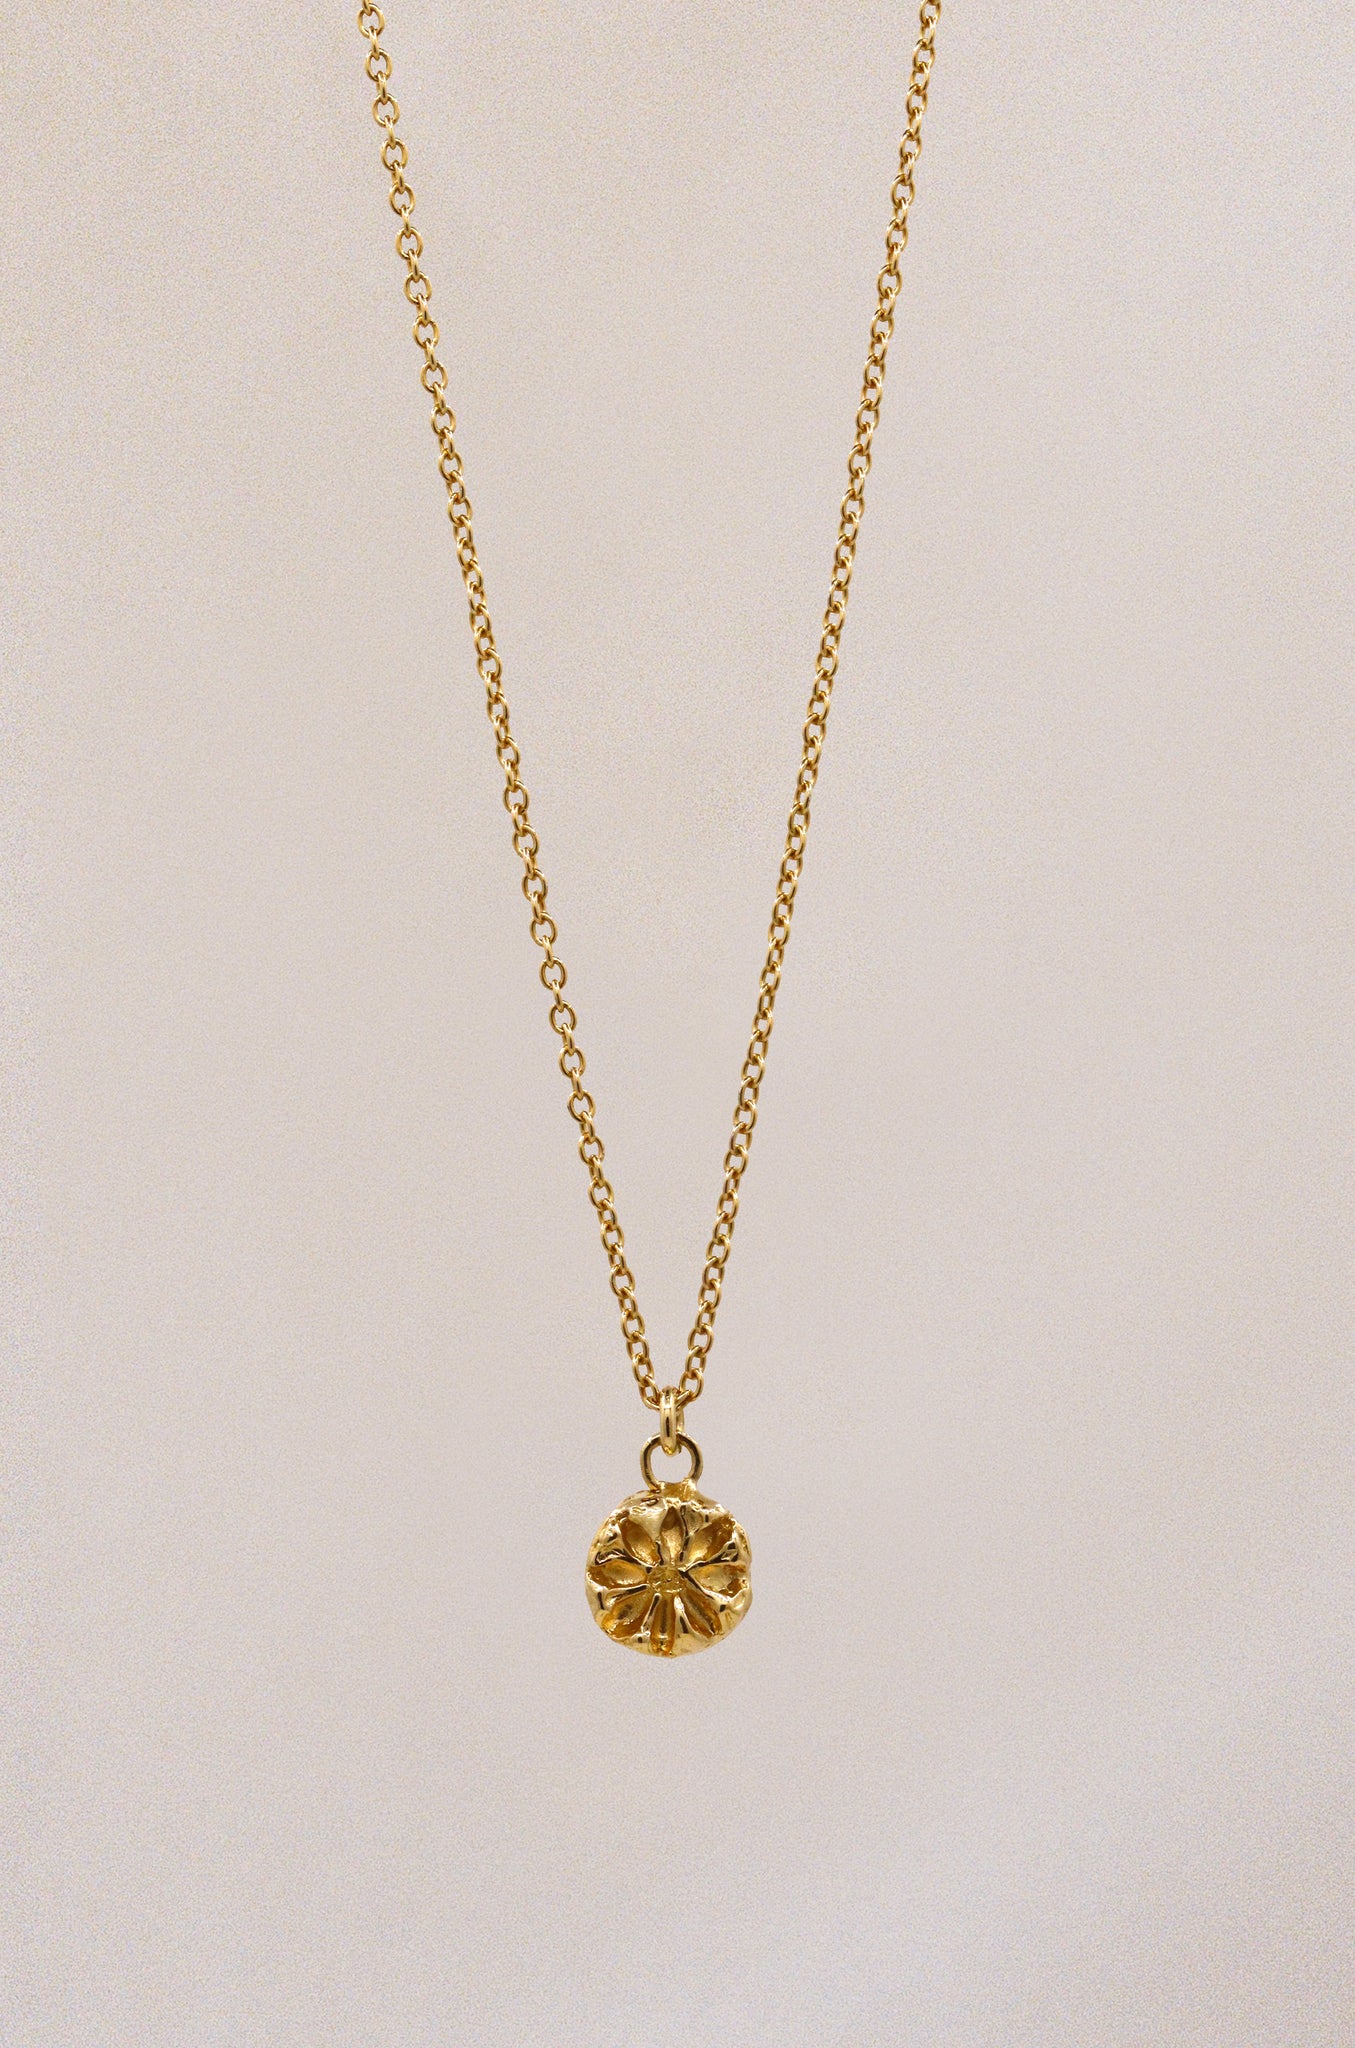 Quarry Necklace - Gold Vermeil